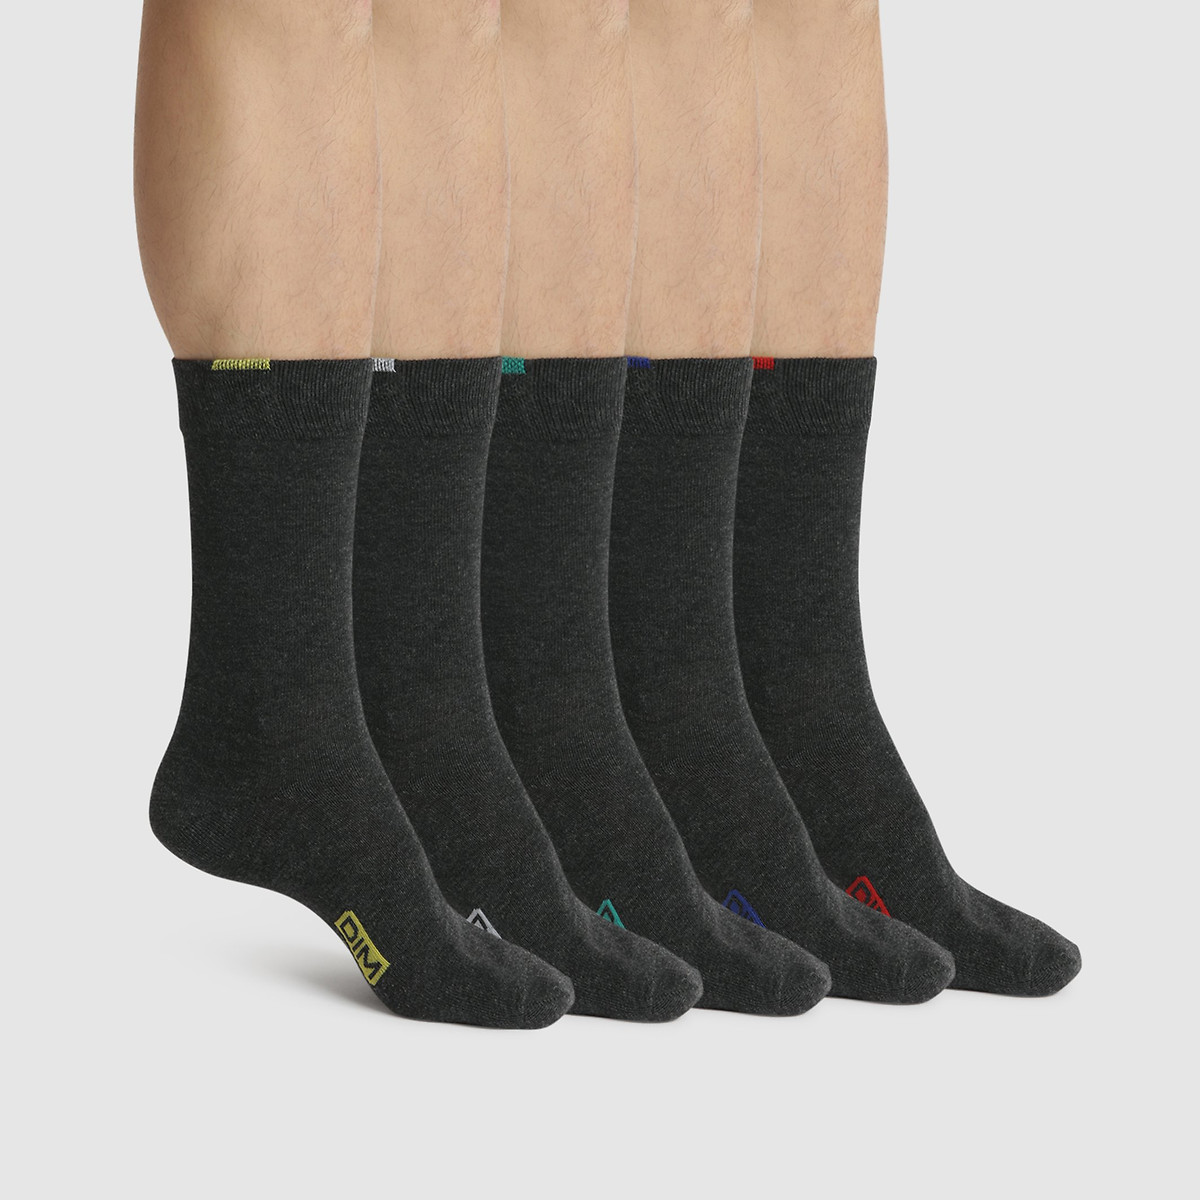 Pack of 5 Pairs of Ecodim Socks